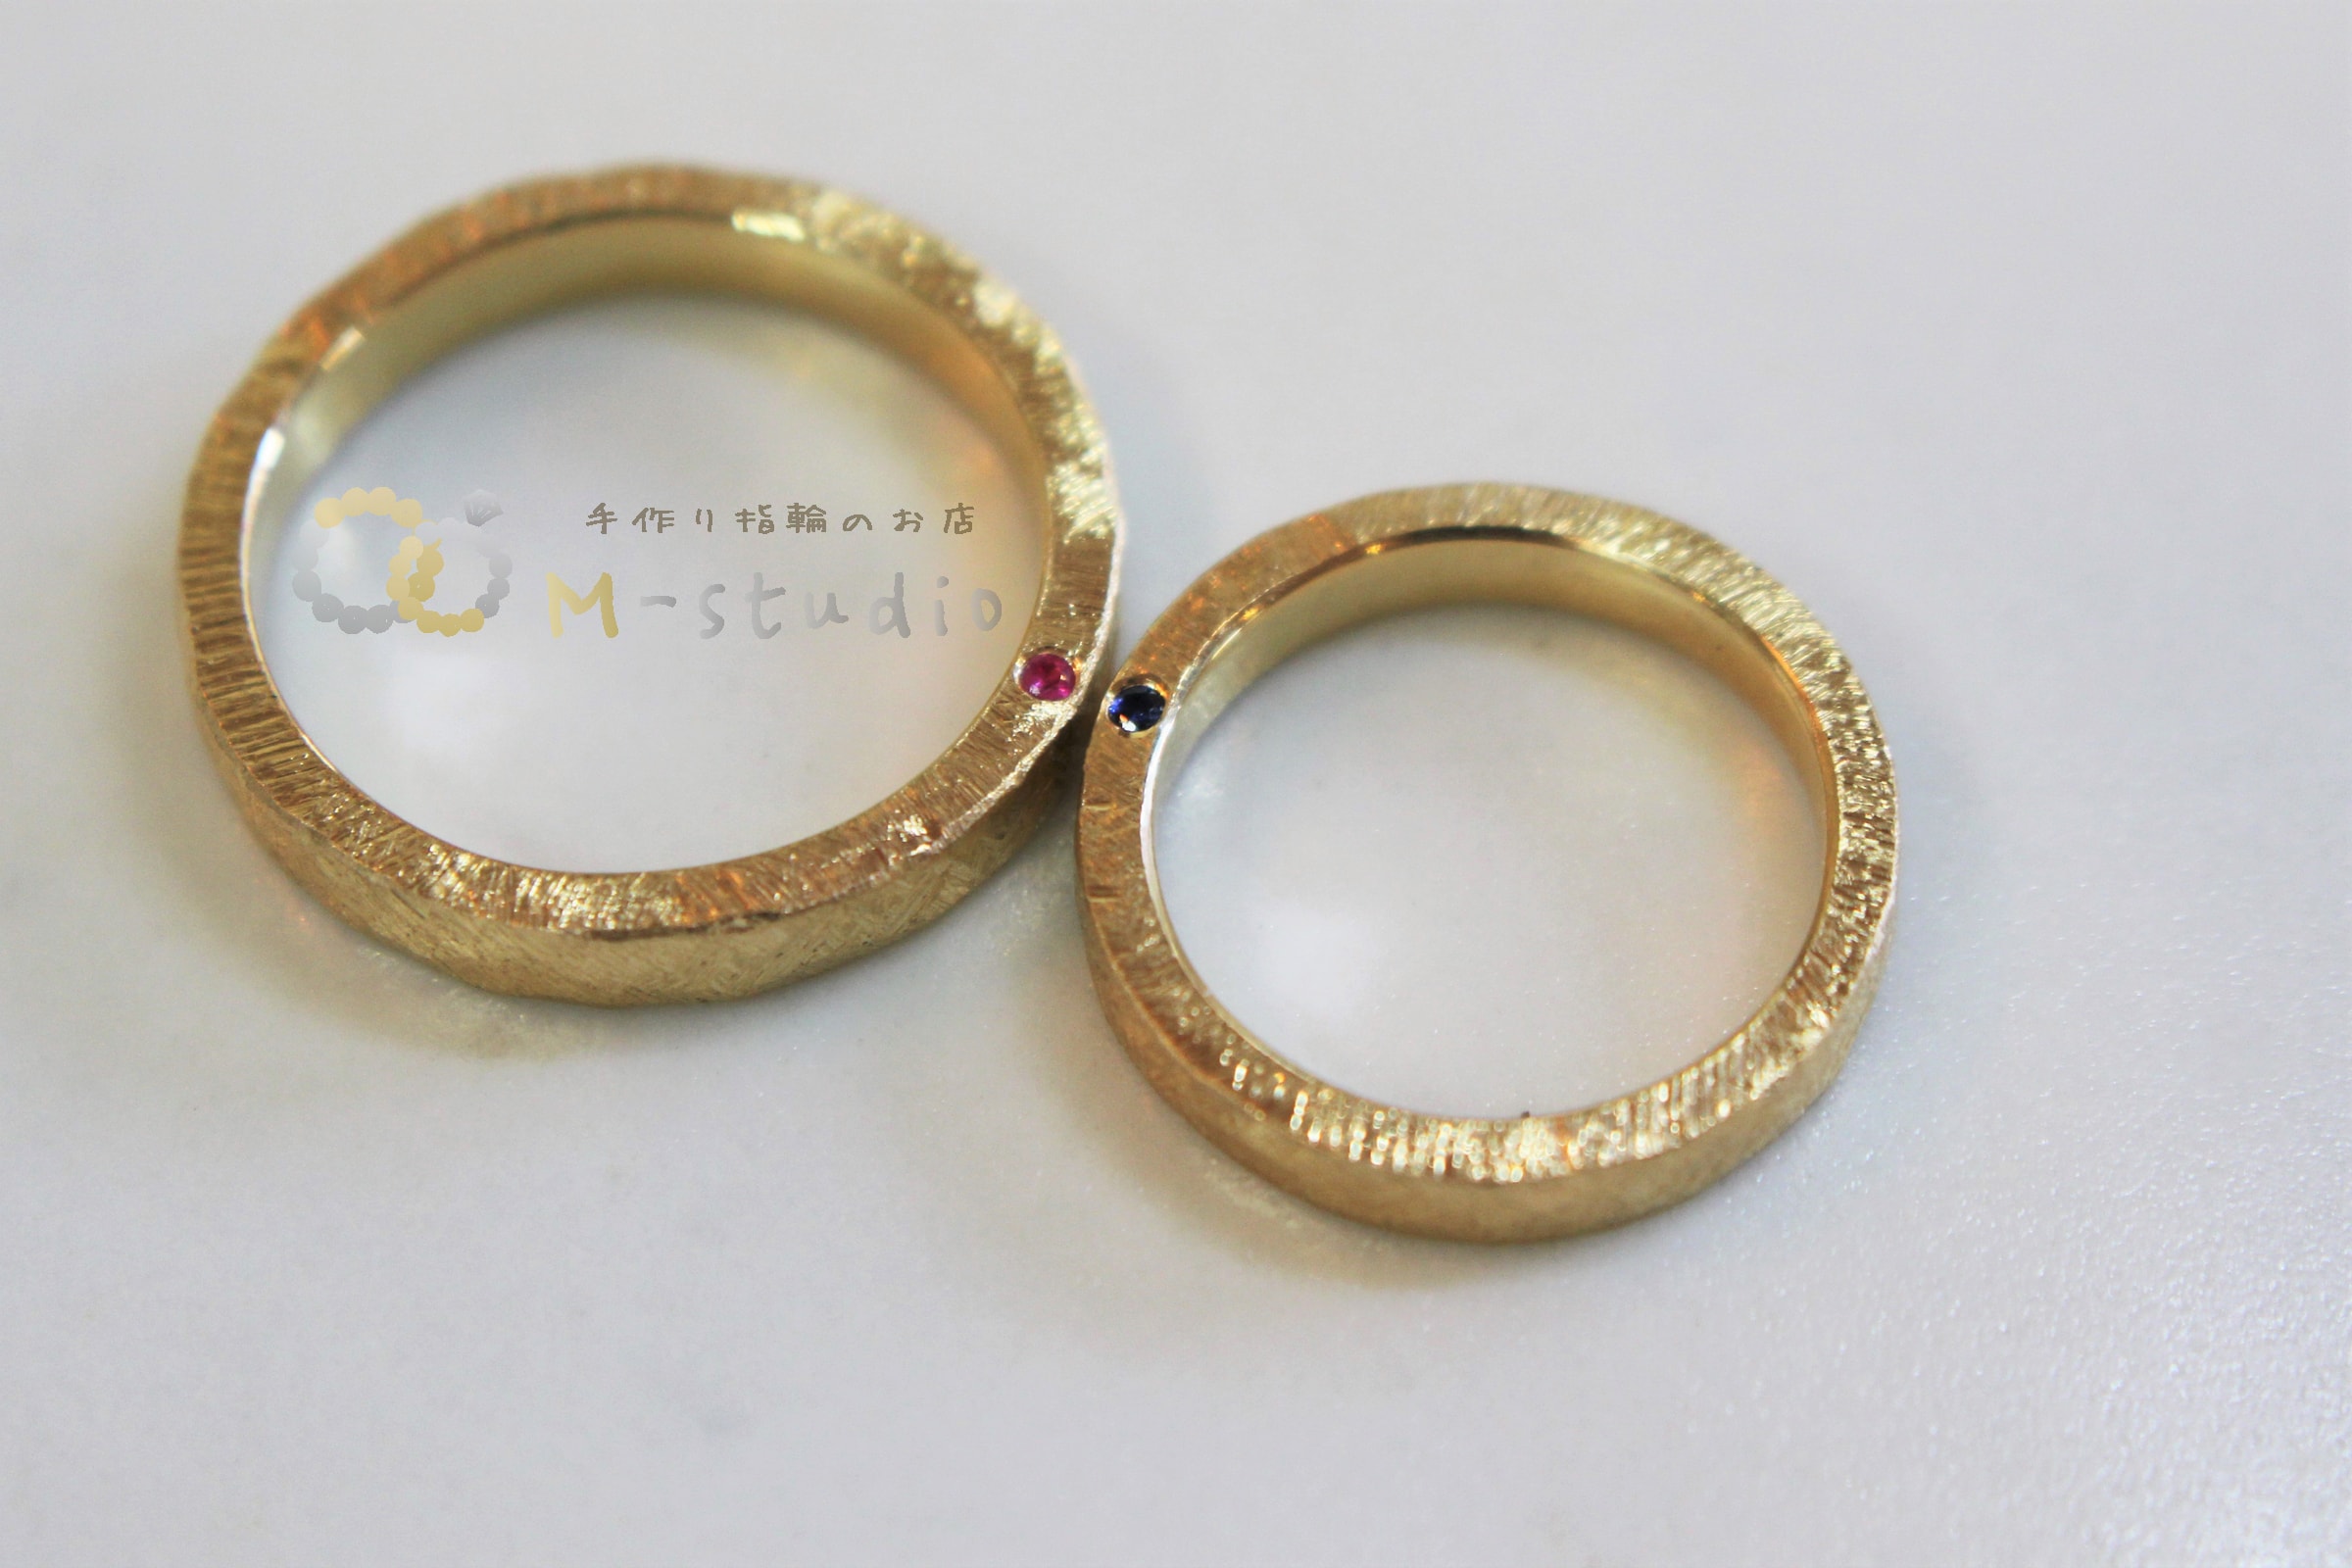 福岡県福岡市「手作り指輪のお店MーSTUDIO」|手作り指輪、婚約指輪、結婚指輪、オーダーメイドジュエリー